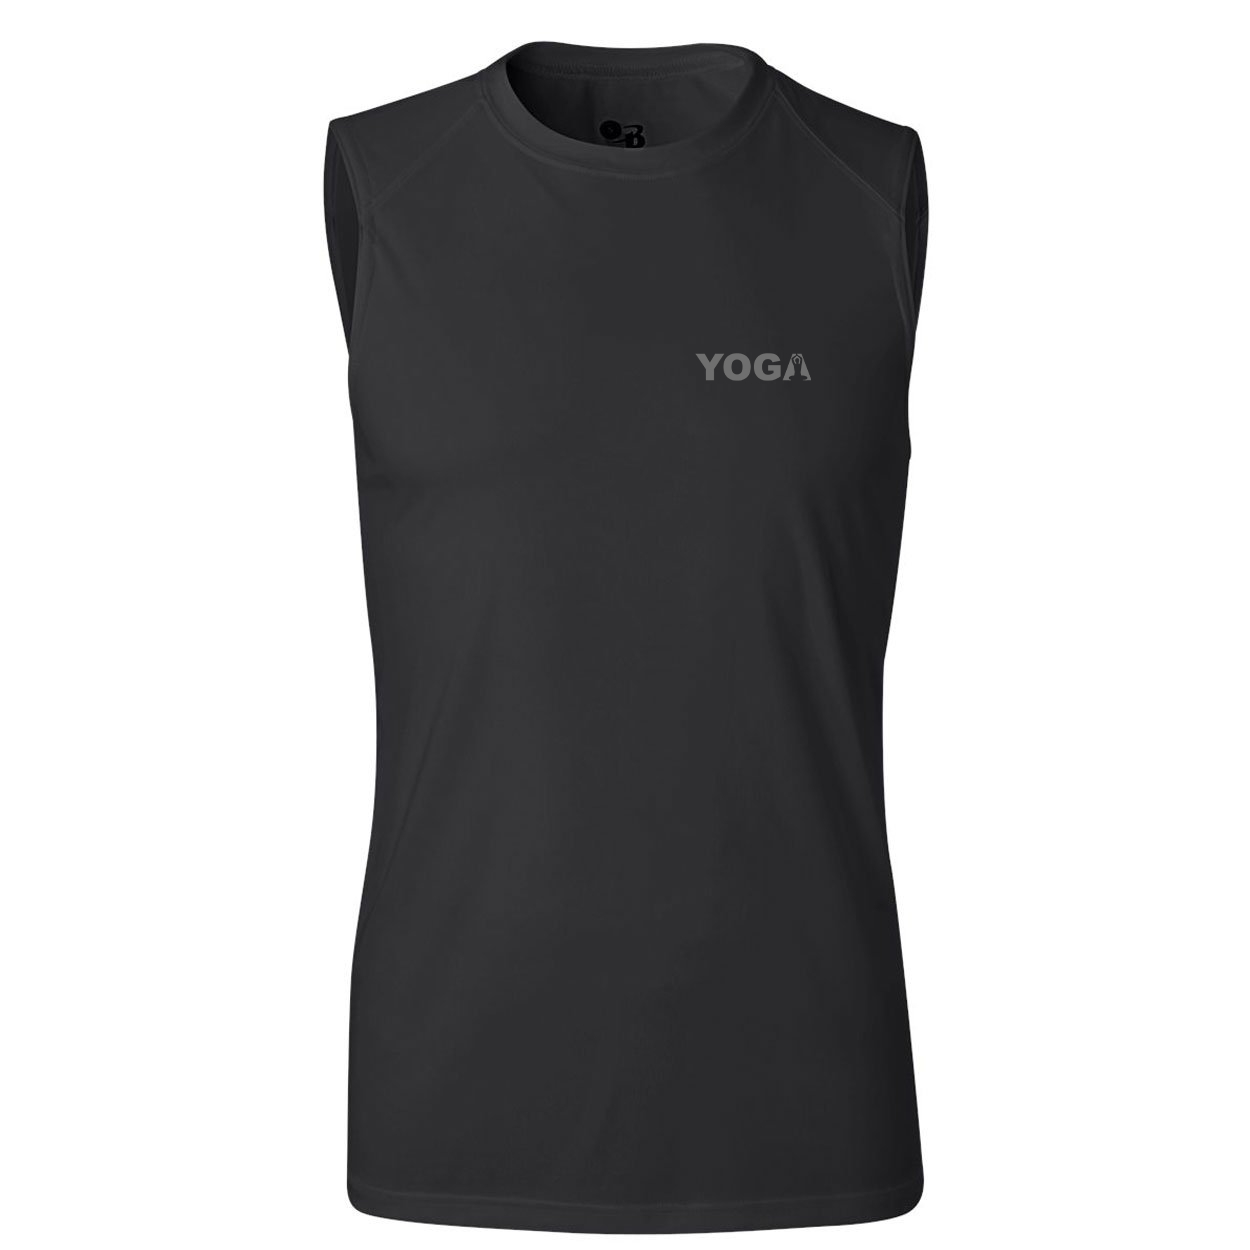 Yoga Meditation Logo Night Out Unisex Performance Sleeveless T-Shirt Black (Gray Logo)